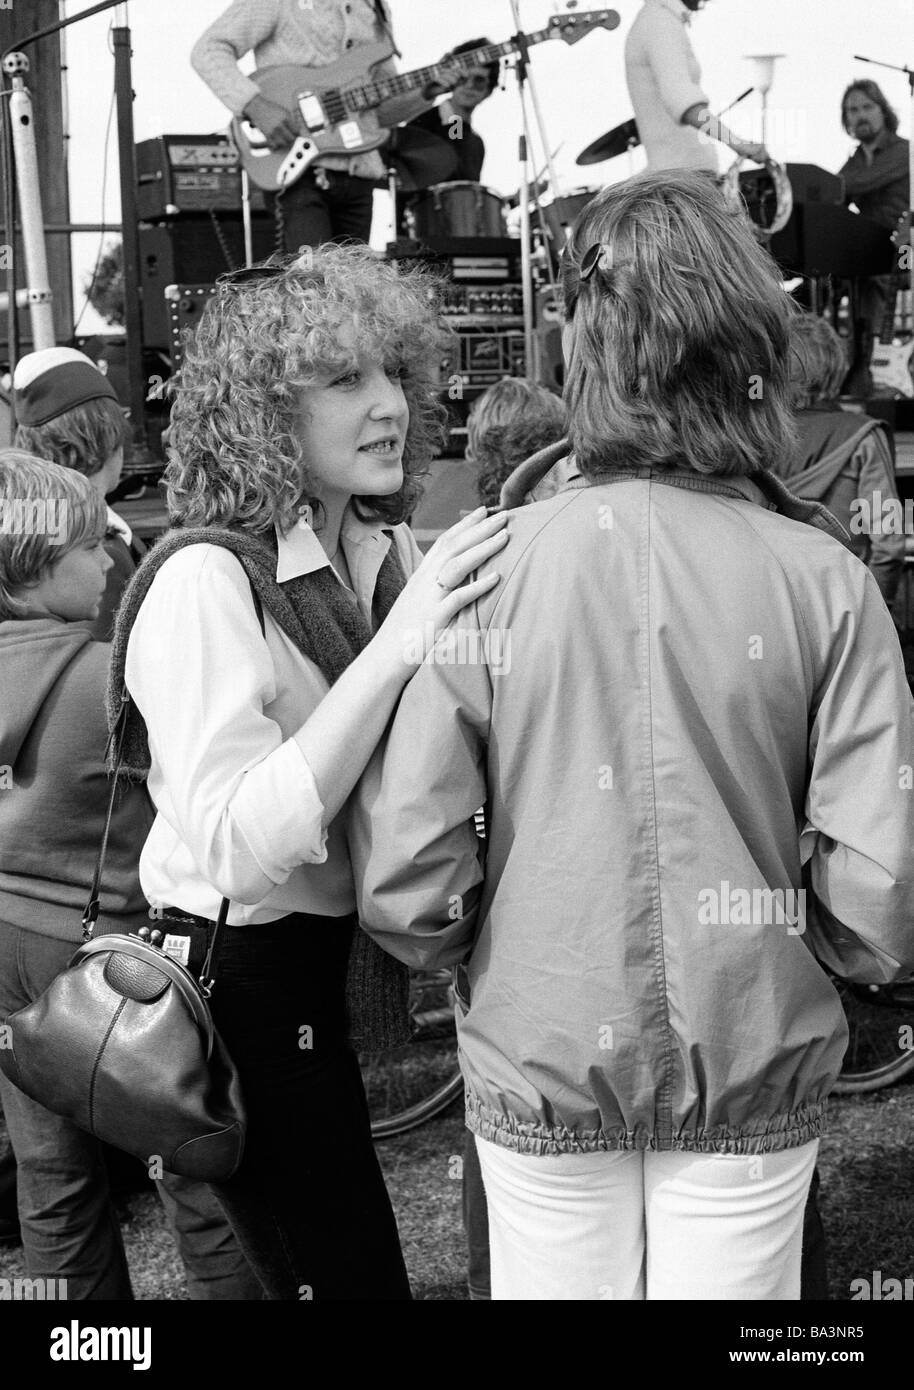 70er Jahre, schwarz / weiß Foto, Menschen, zwei junge Mädchen sprechen bei  einem Popkonzert, Bluse, Jacke, Hose, im Alter von 18 bis 22 Jahre  Stockfotografie - Alamy